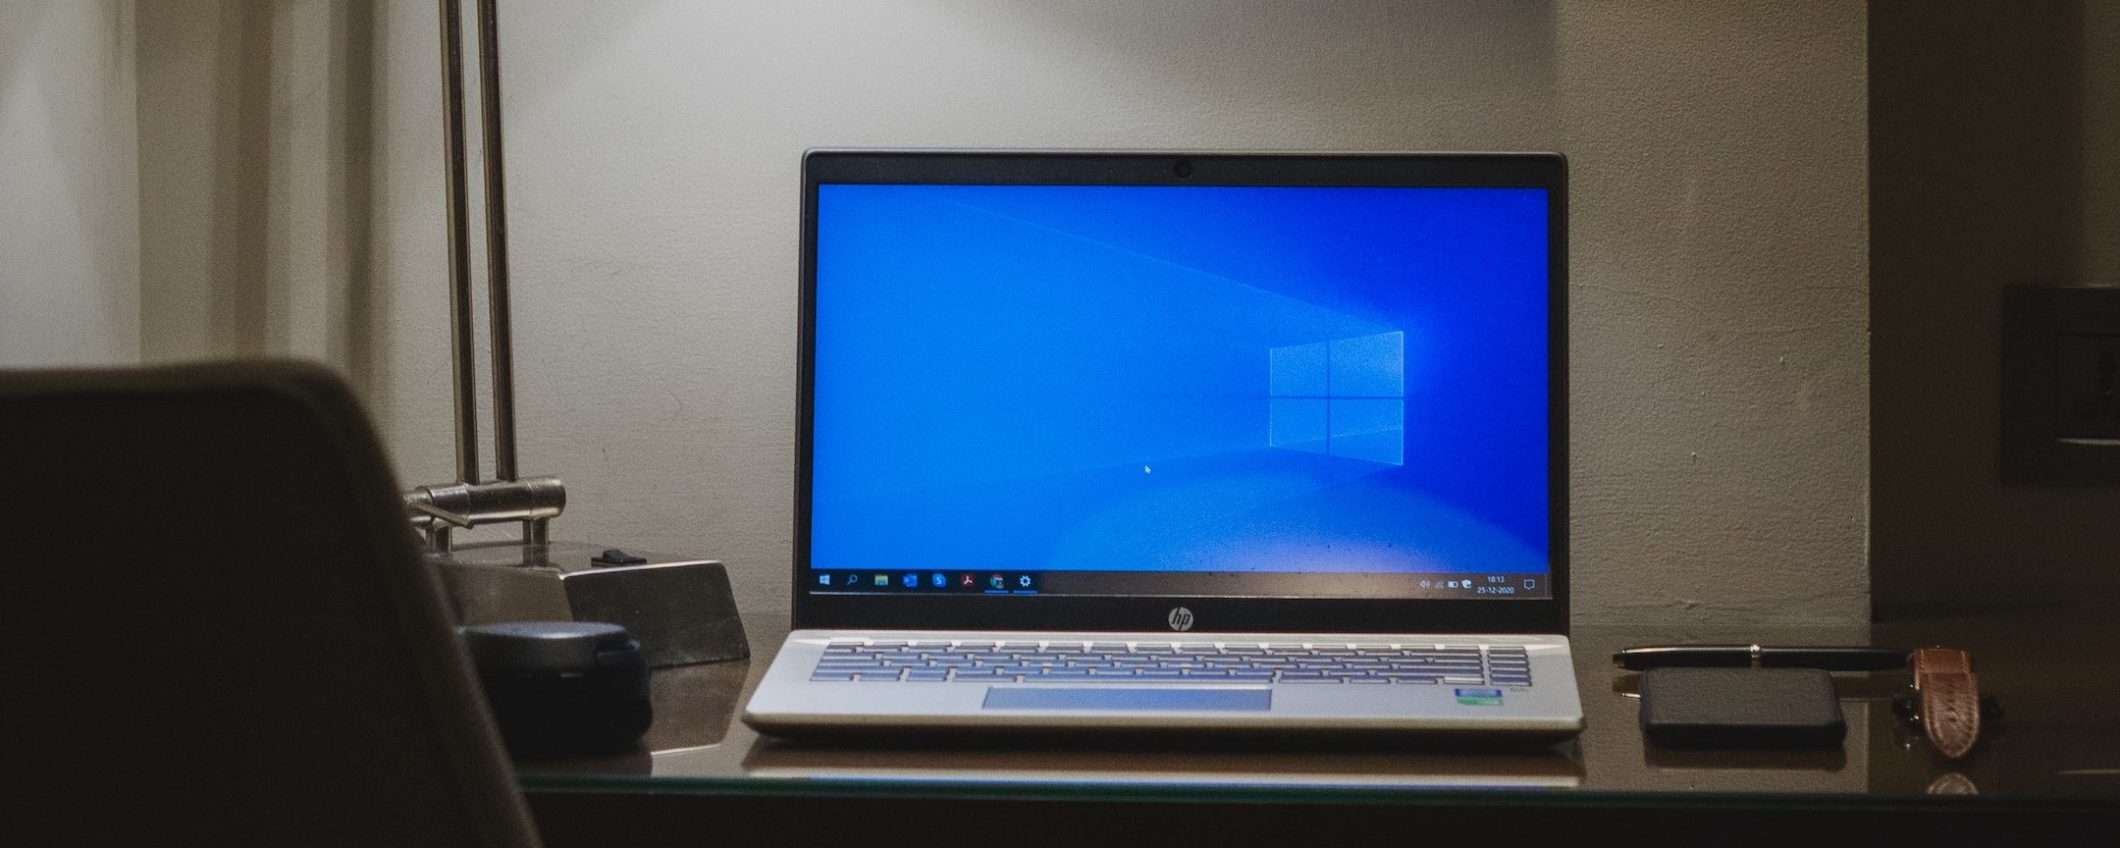 Suggerimenti per migliorare le prestazioni del PC in Windows 10